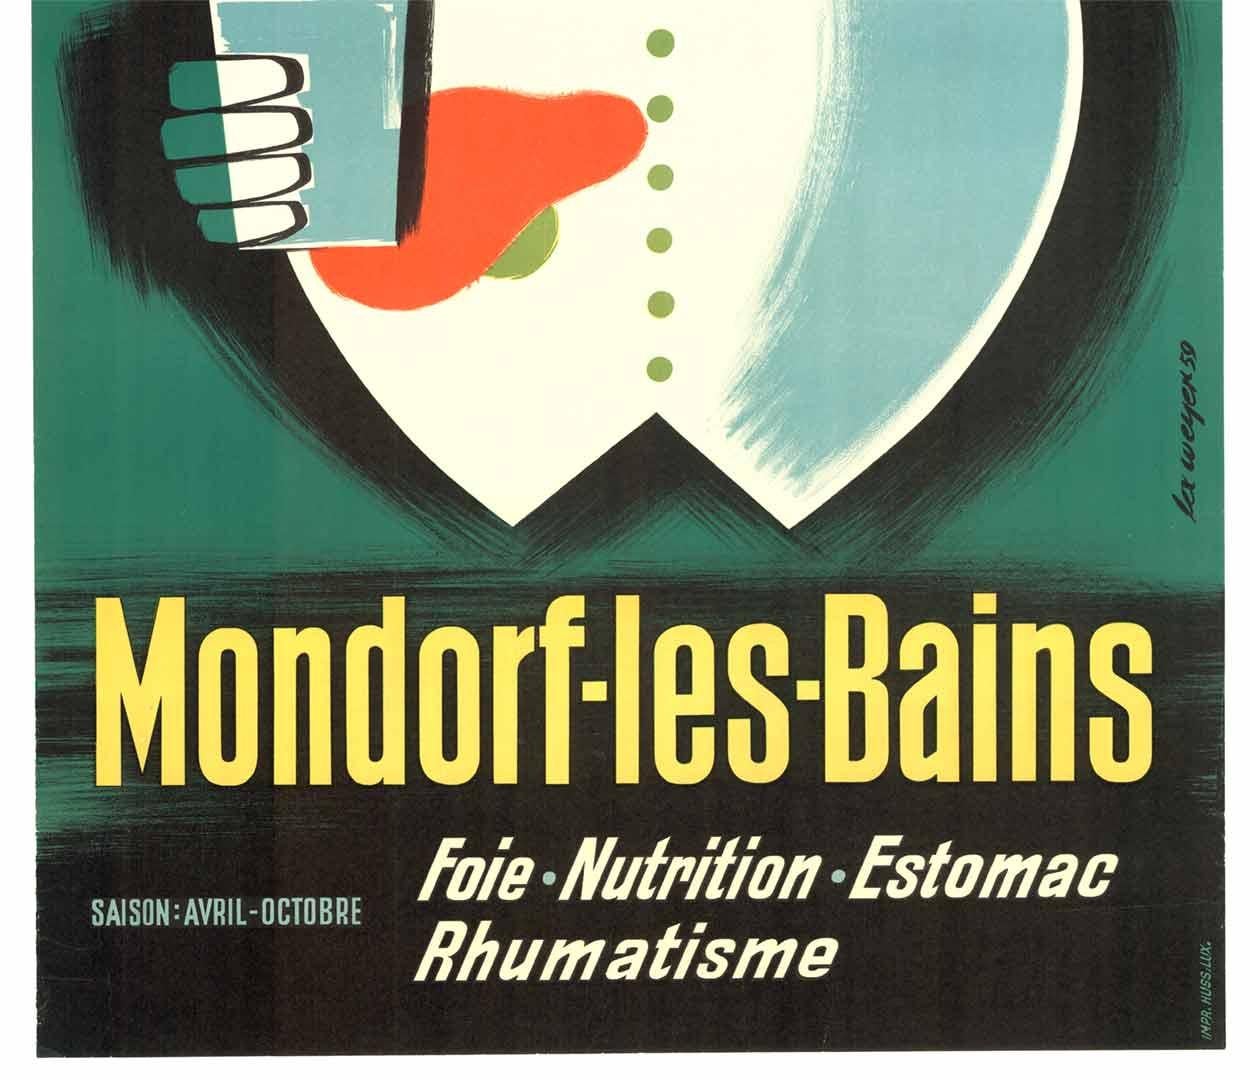 Originales Vintage-Spa-Poster von Mondorf-les-Baines (Abstrakter Expressionismus), Print, von Lex Weyer